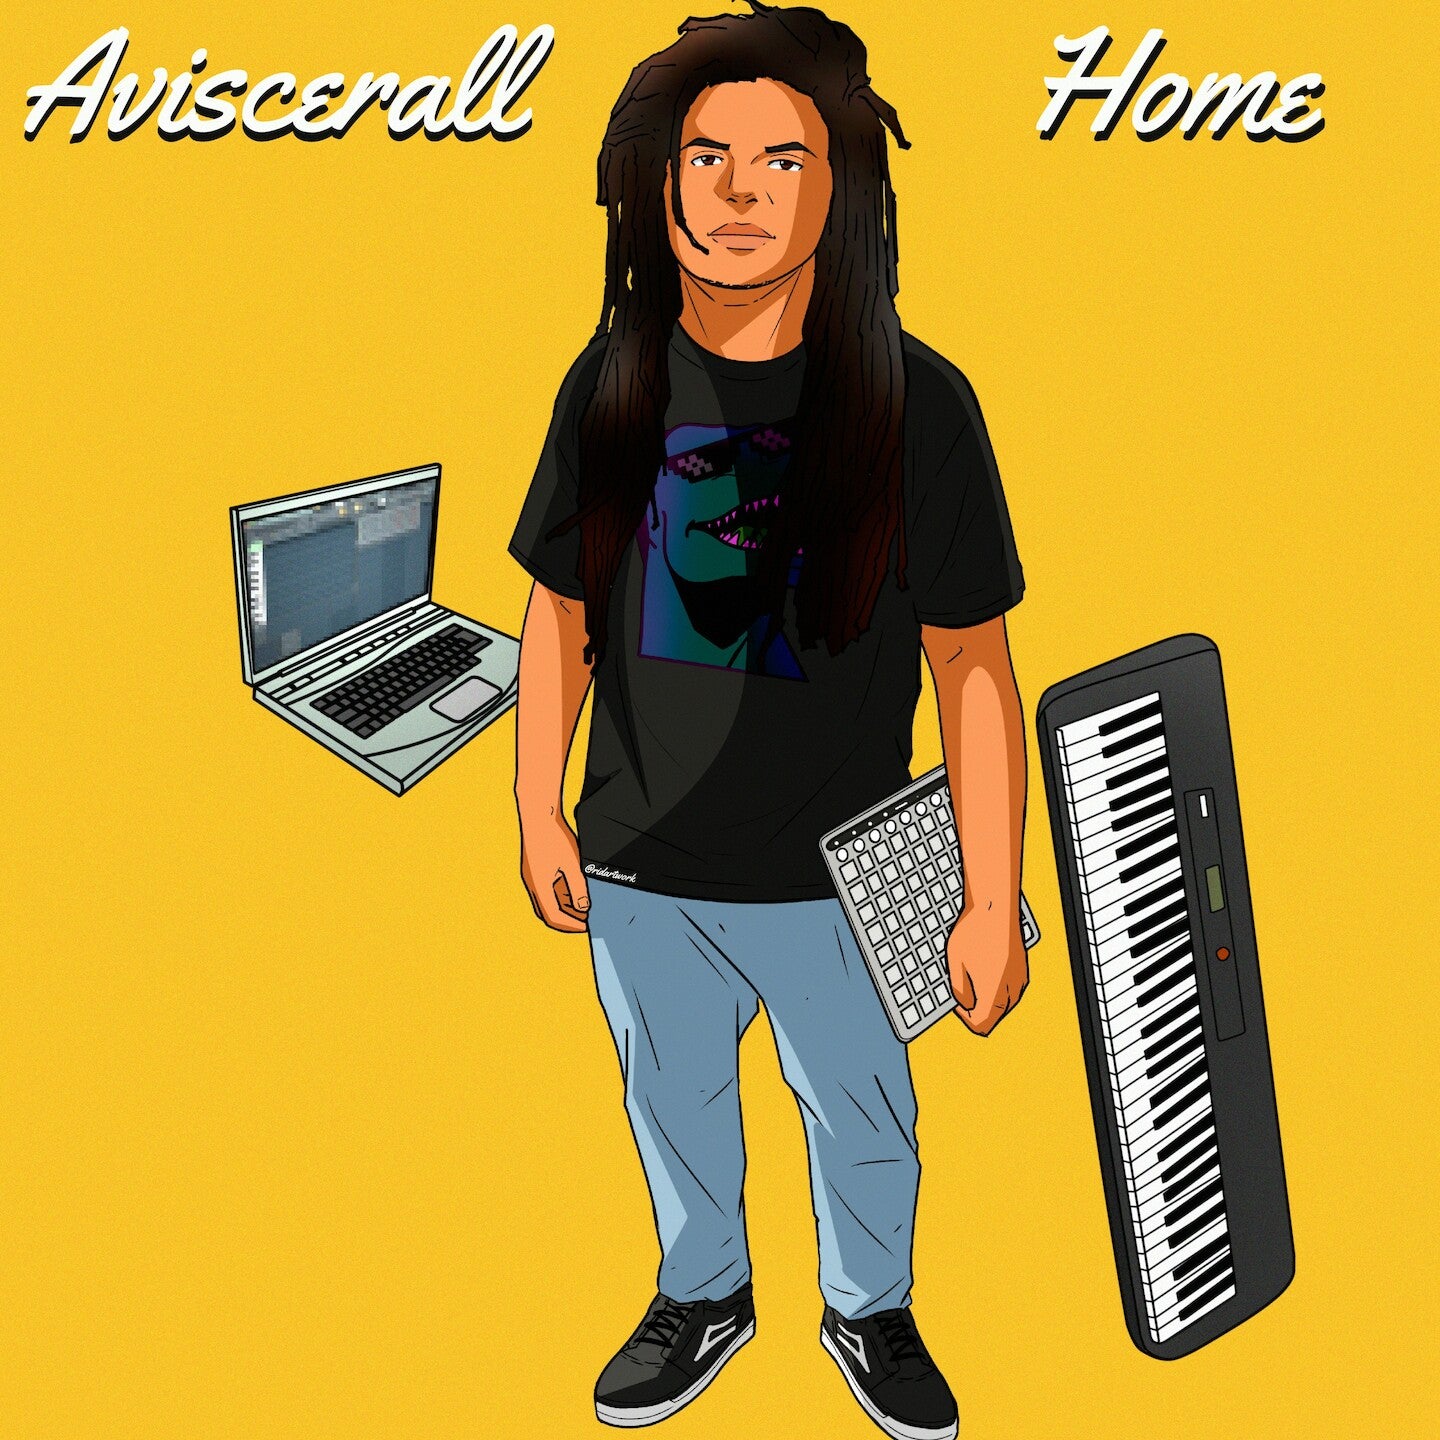 Aviscerall - Home (Album)